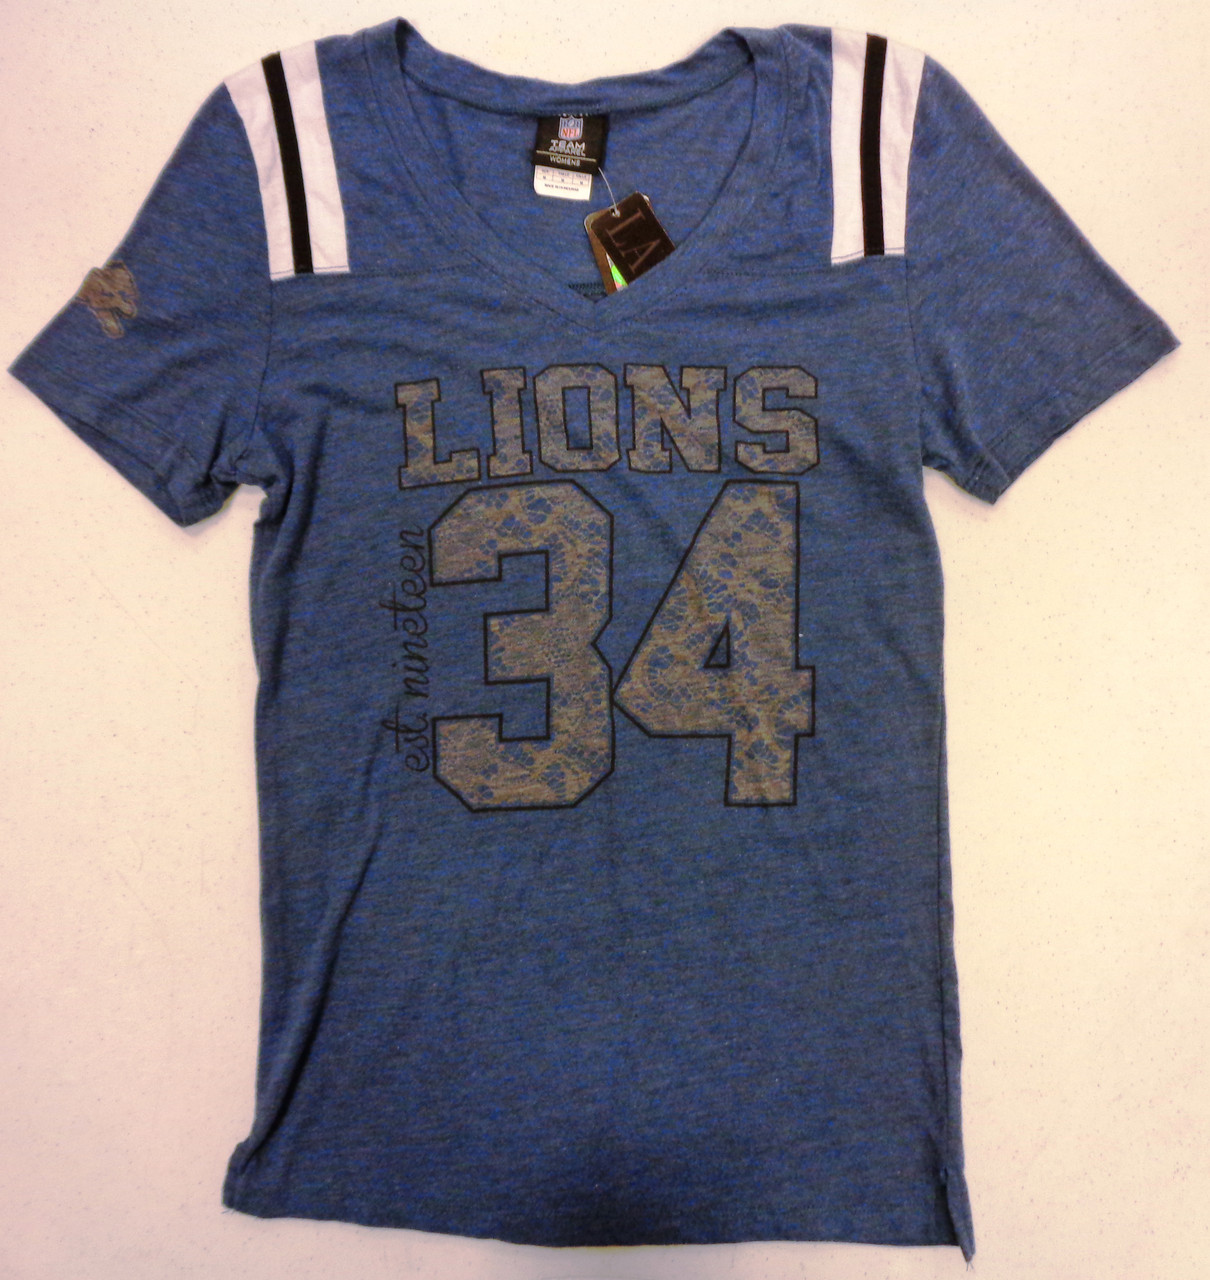 detroit lions women's t shirt